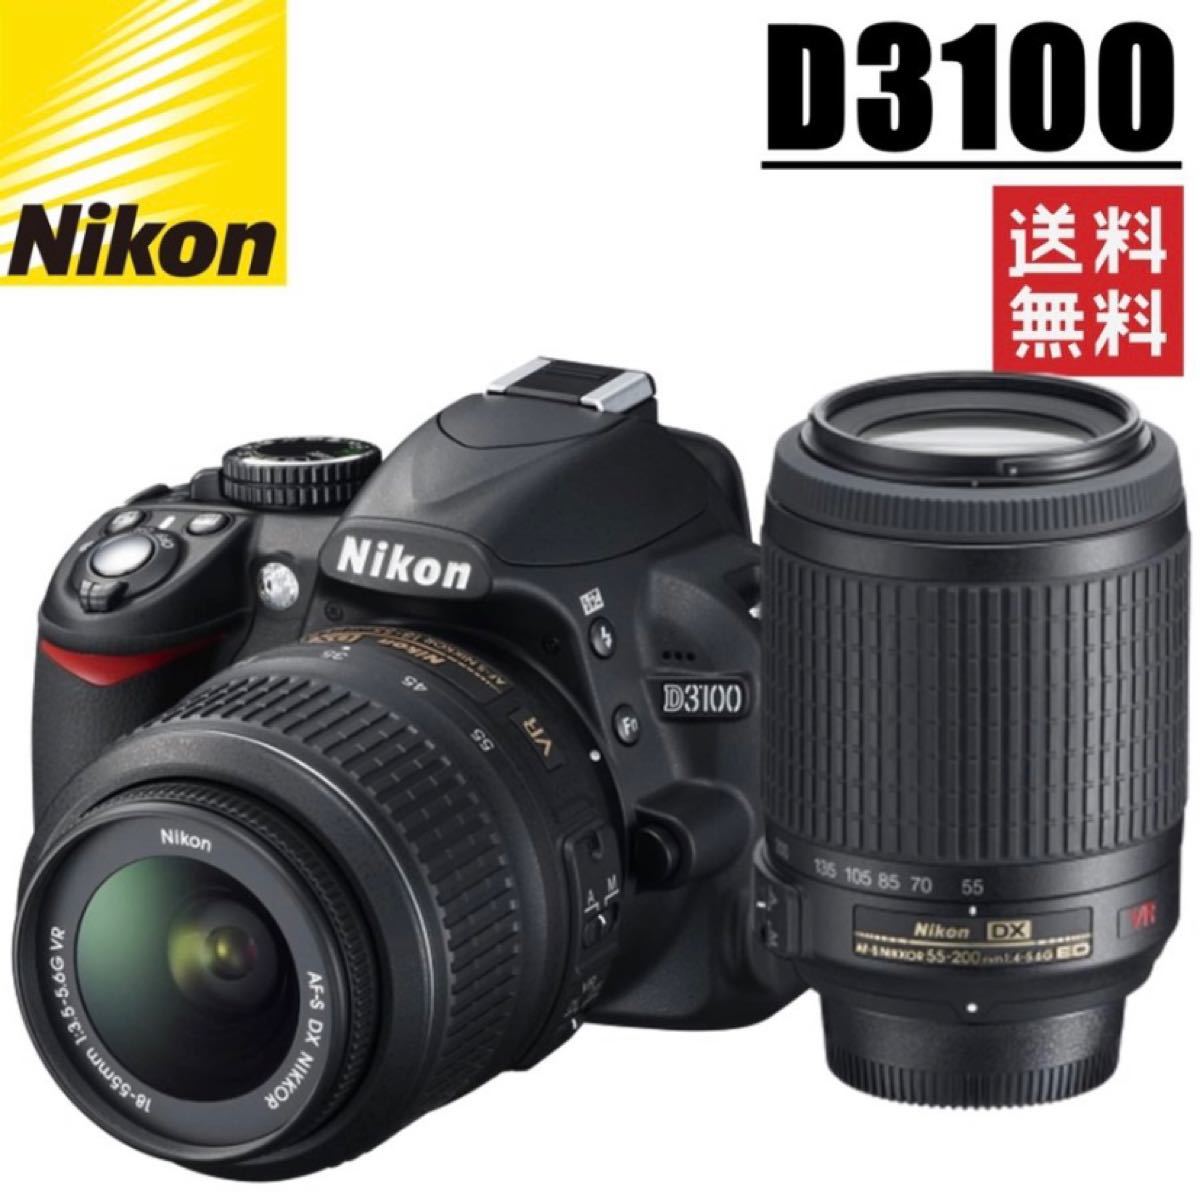 ニコン Nikon D3100 ダブルレンズセット 標準レンズ18-55mm / 望遠レンズ55-200mm 新品SDカード付